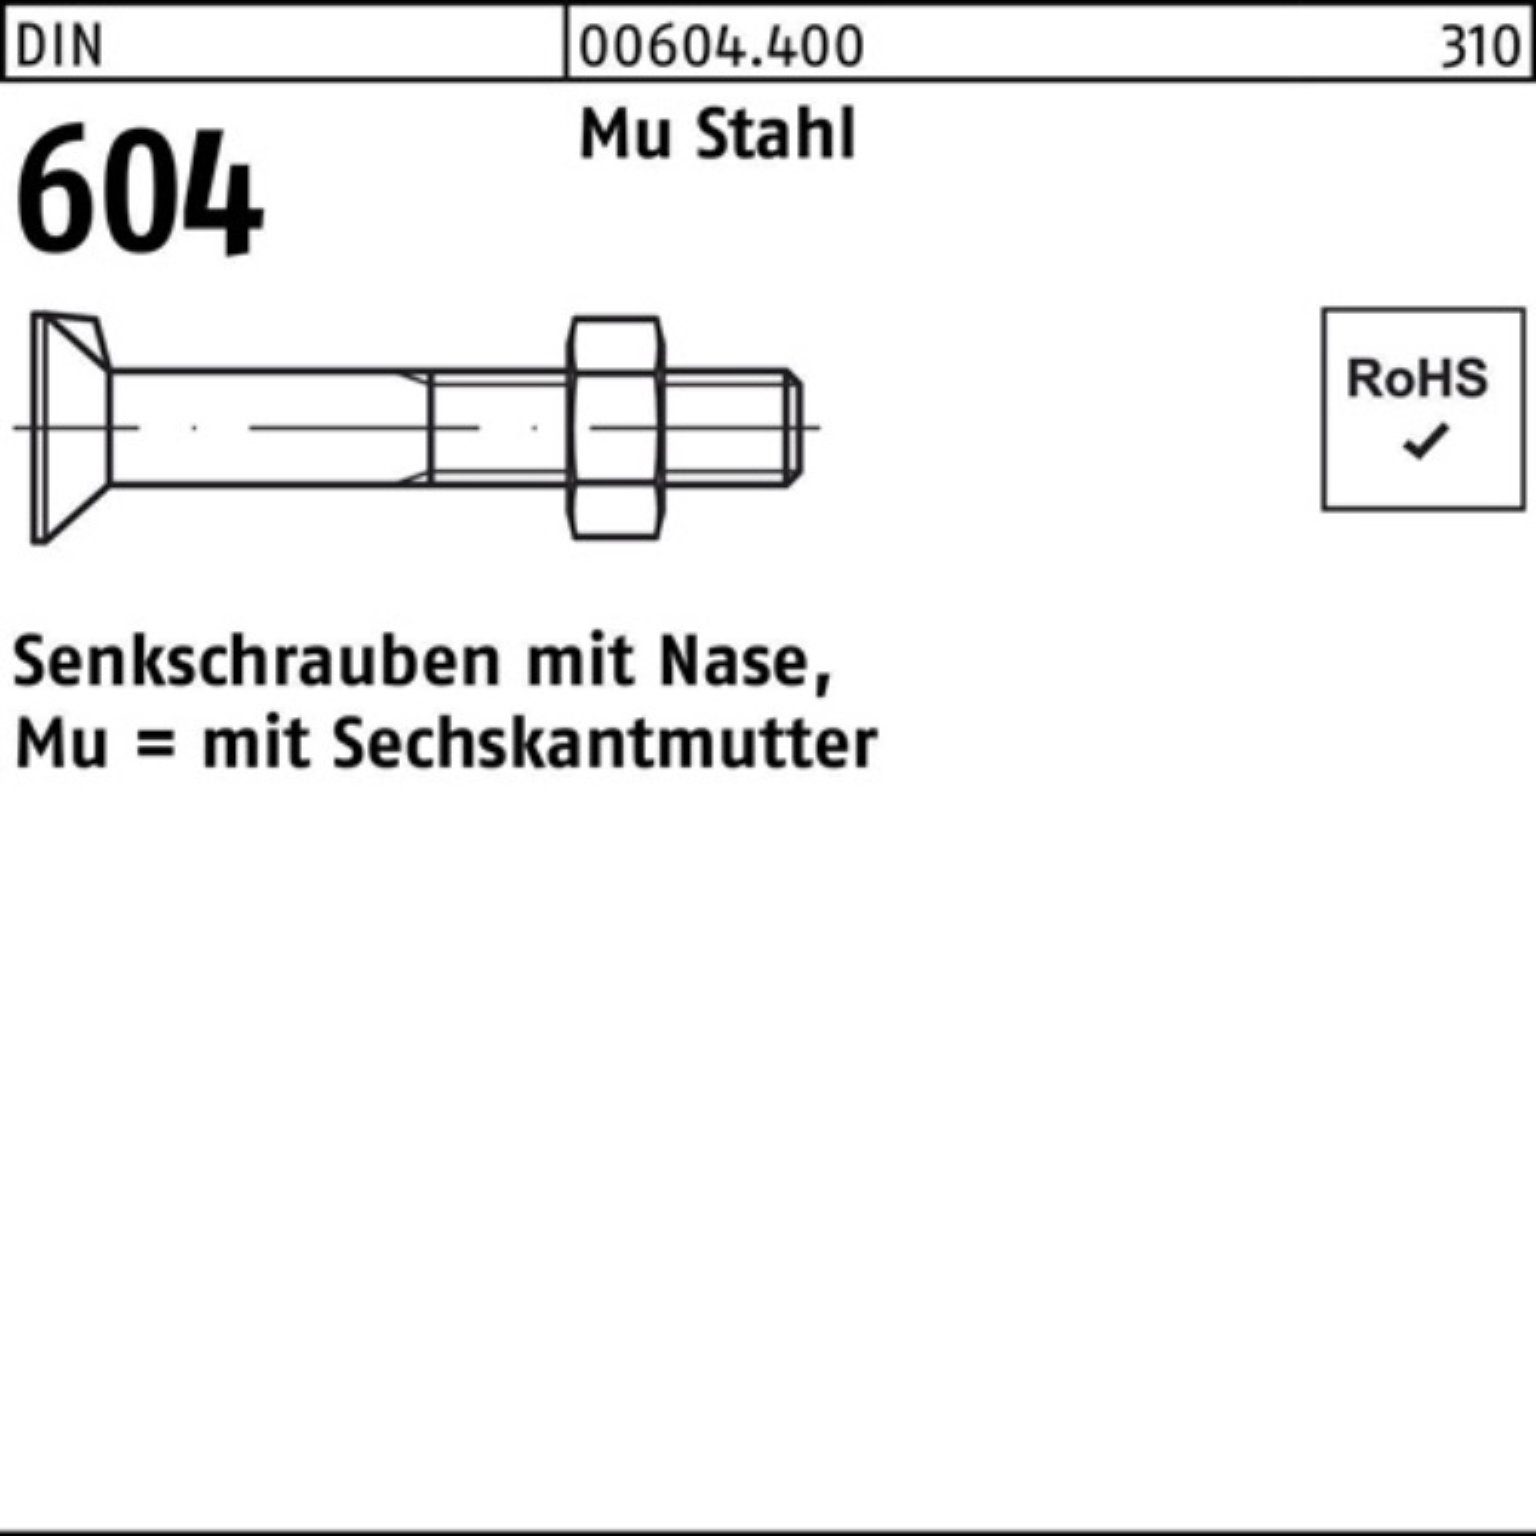 Reyher Senkschraube 100er Pack Senkschraube DIN 604 Nase/6-ktmutter M16x 50 Mu Stahl 4.6 5